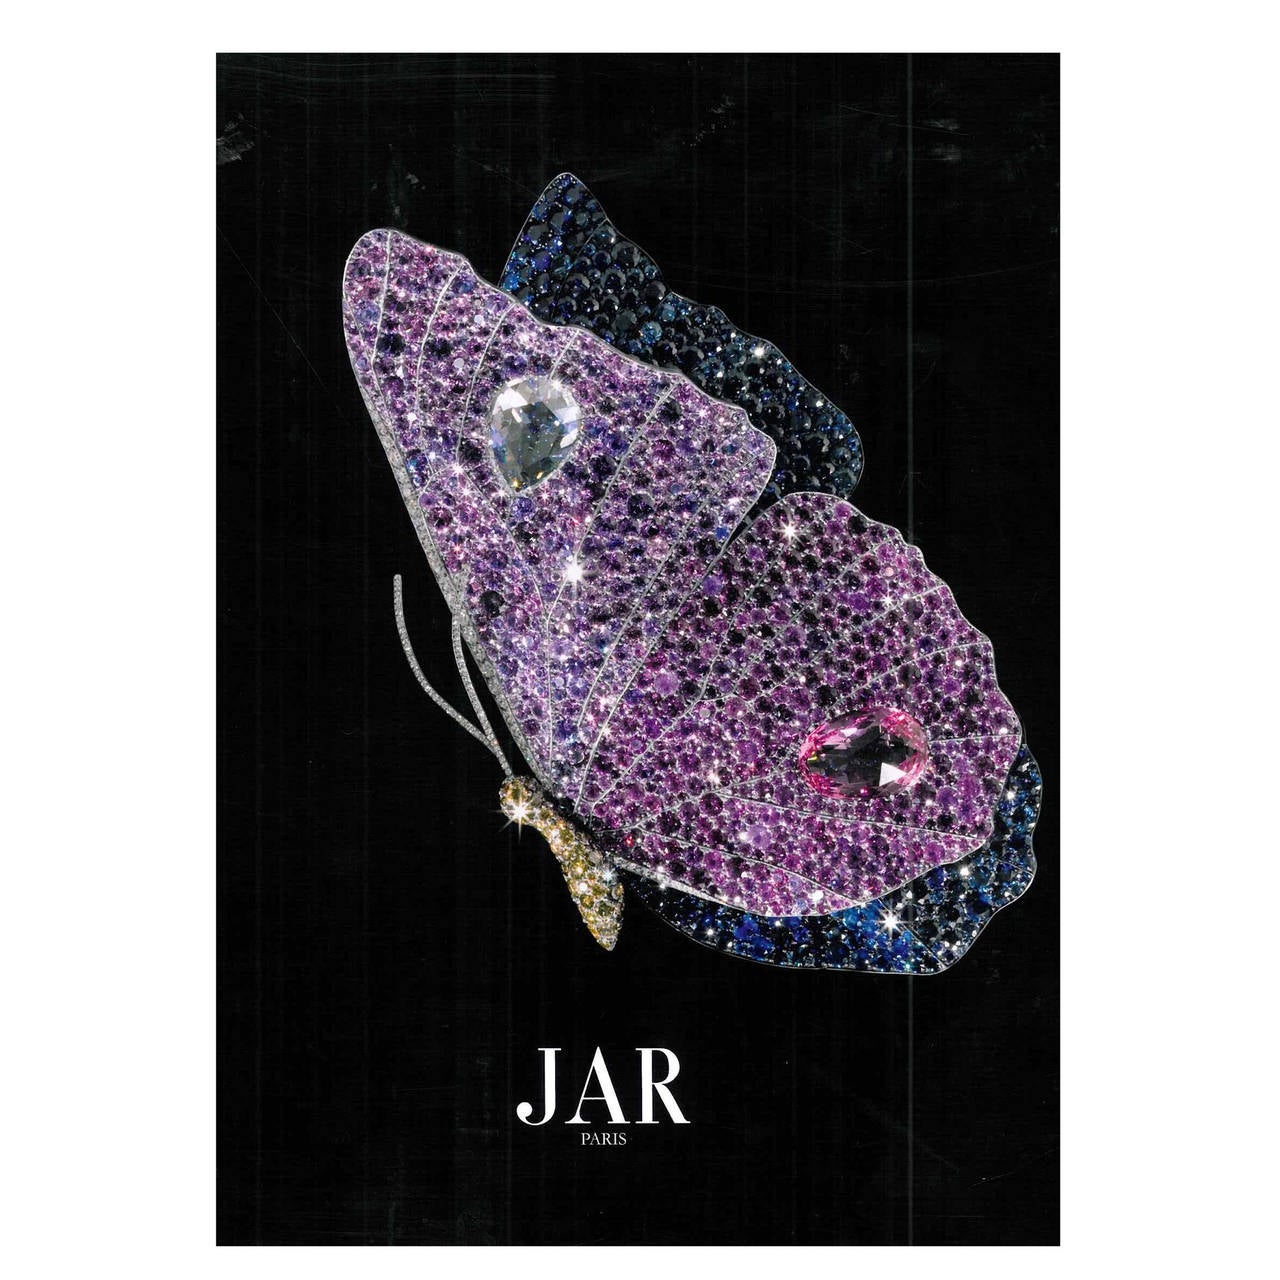 Book of JAR Paris - II